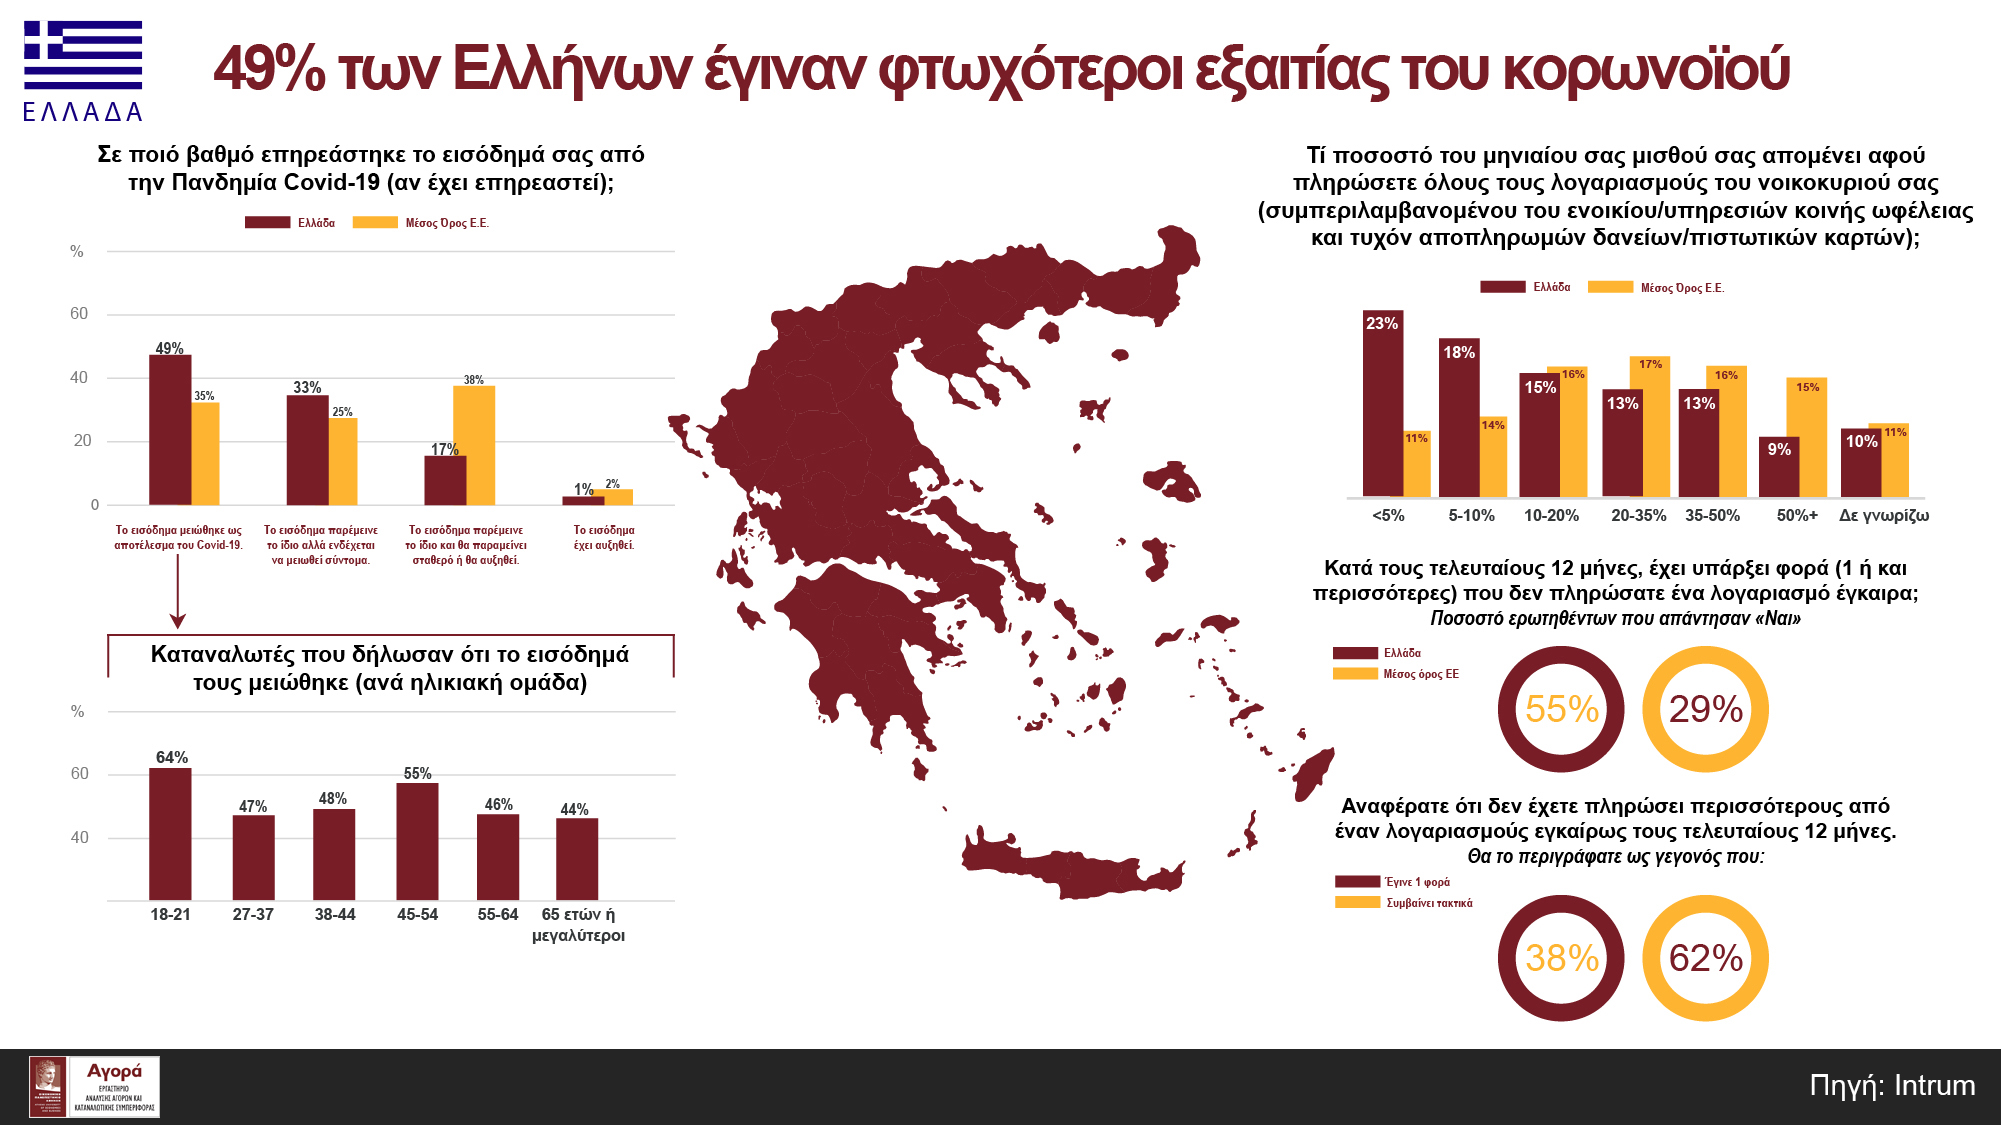 Οι επιπτώσεις του κορωνοϊού στην Ελλάδα...η αποκαλυπτική έρευνα της Intrum!